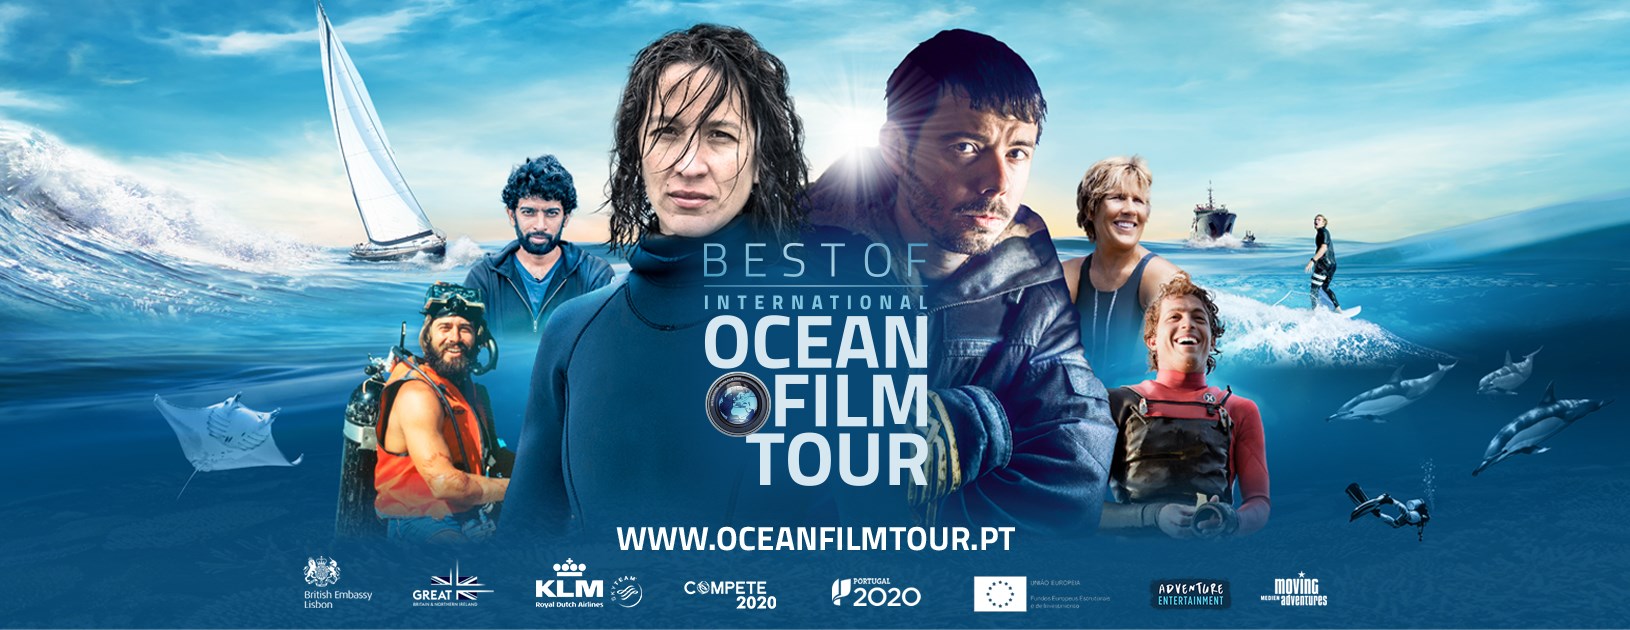 International Ocean Film Tour Best of - Coimbra